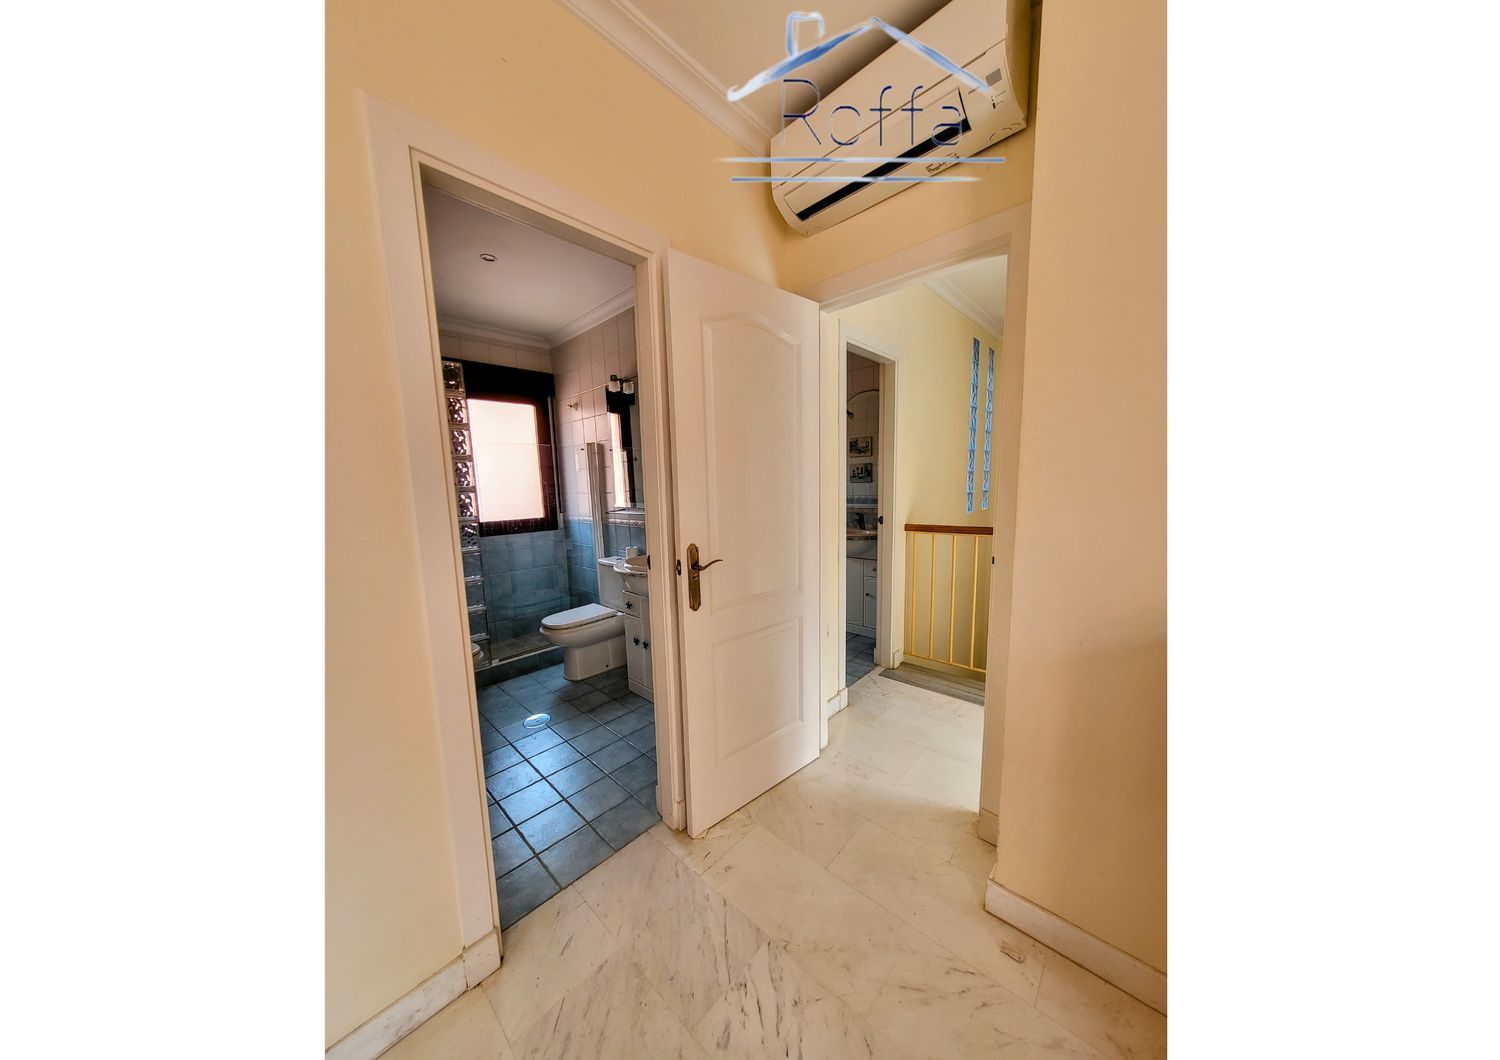 Área de Motril, Granada, 4 Bedrooms Bedrooms, ,4 BathroomsBathrooms,House,For Sale